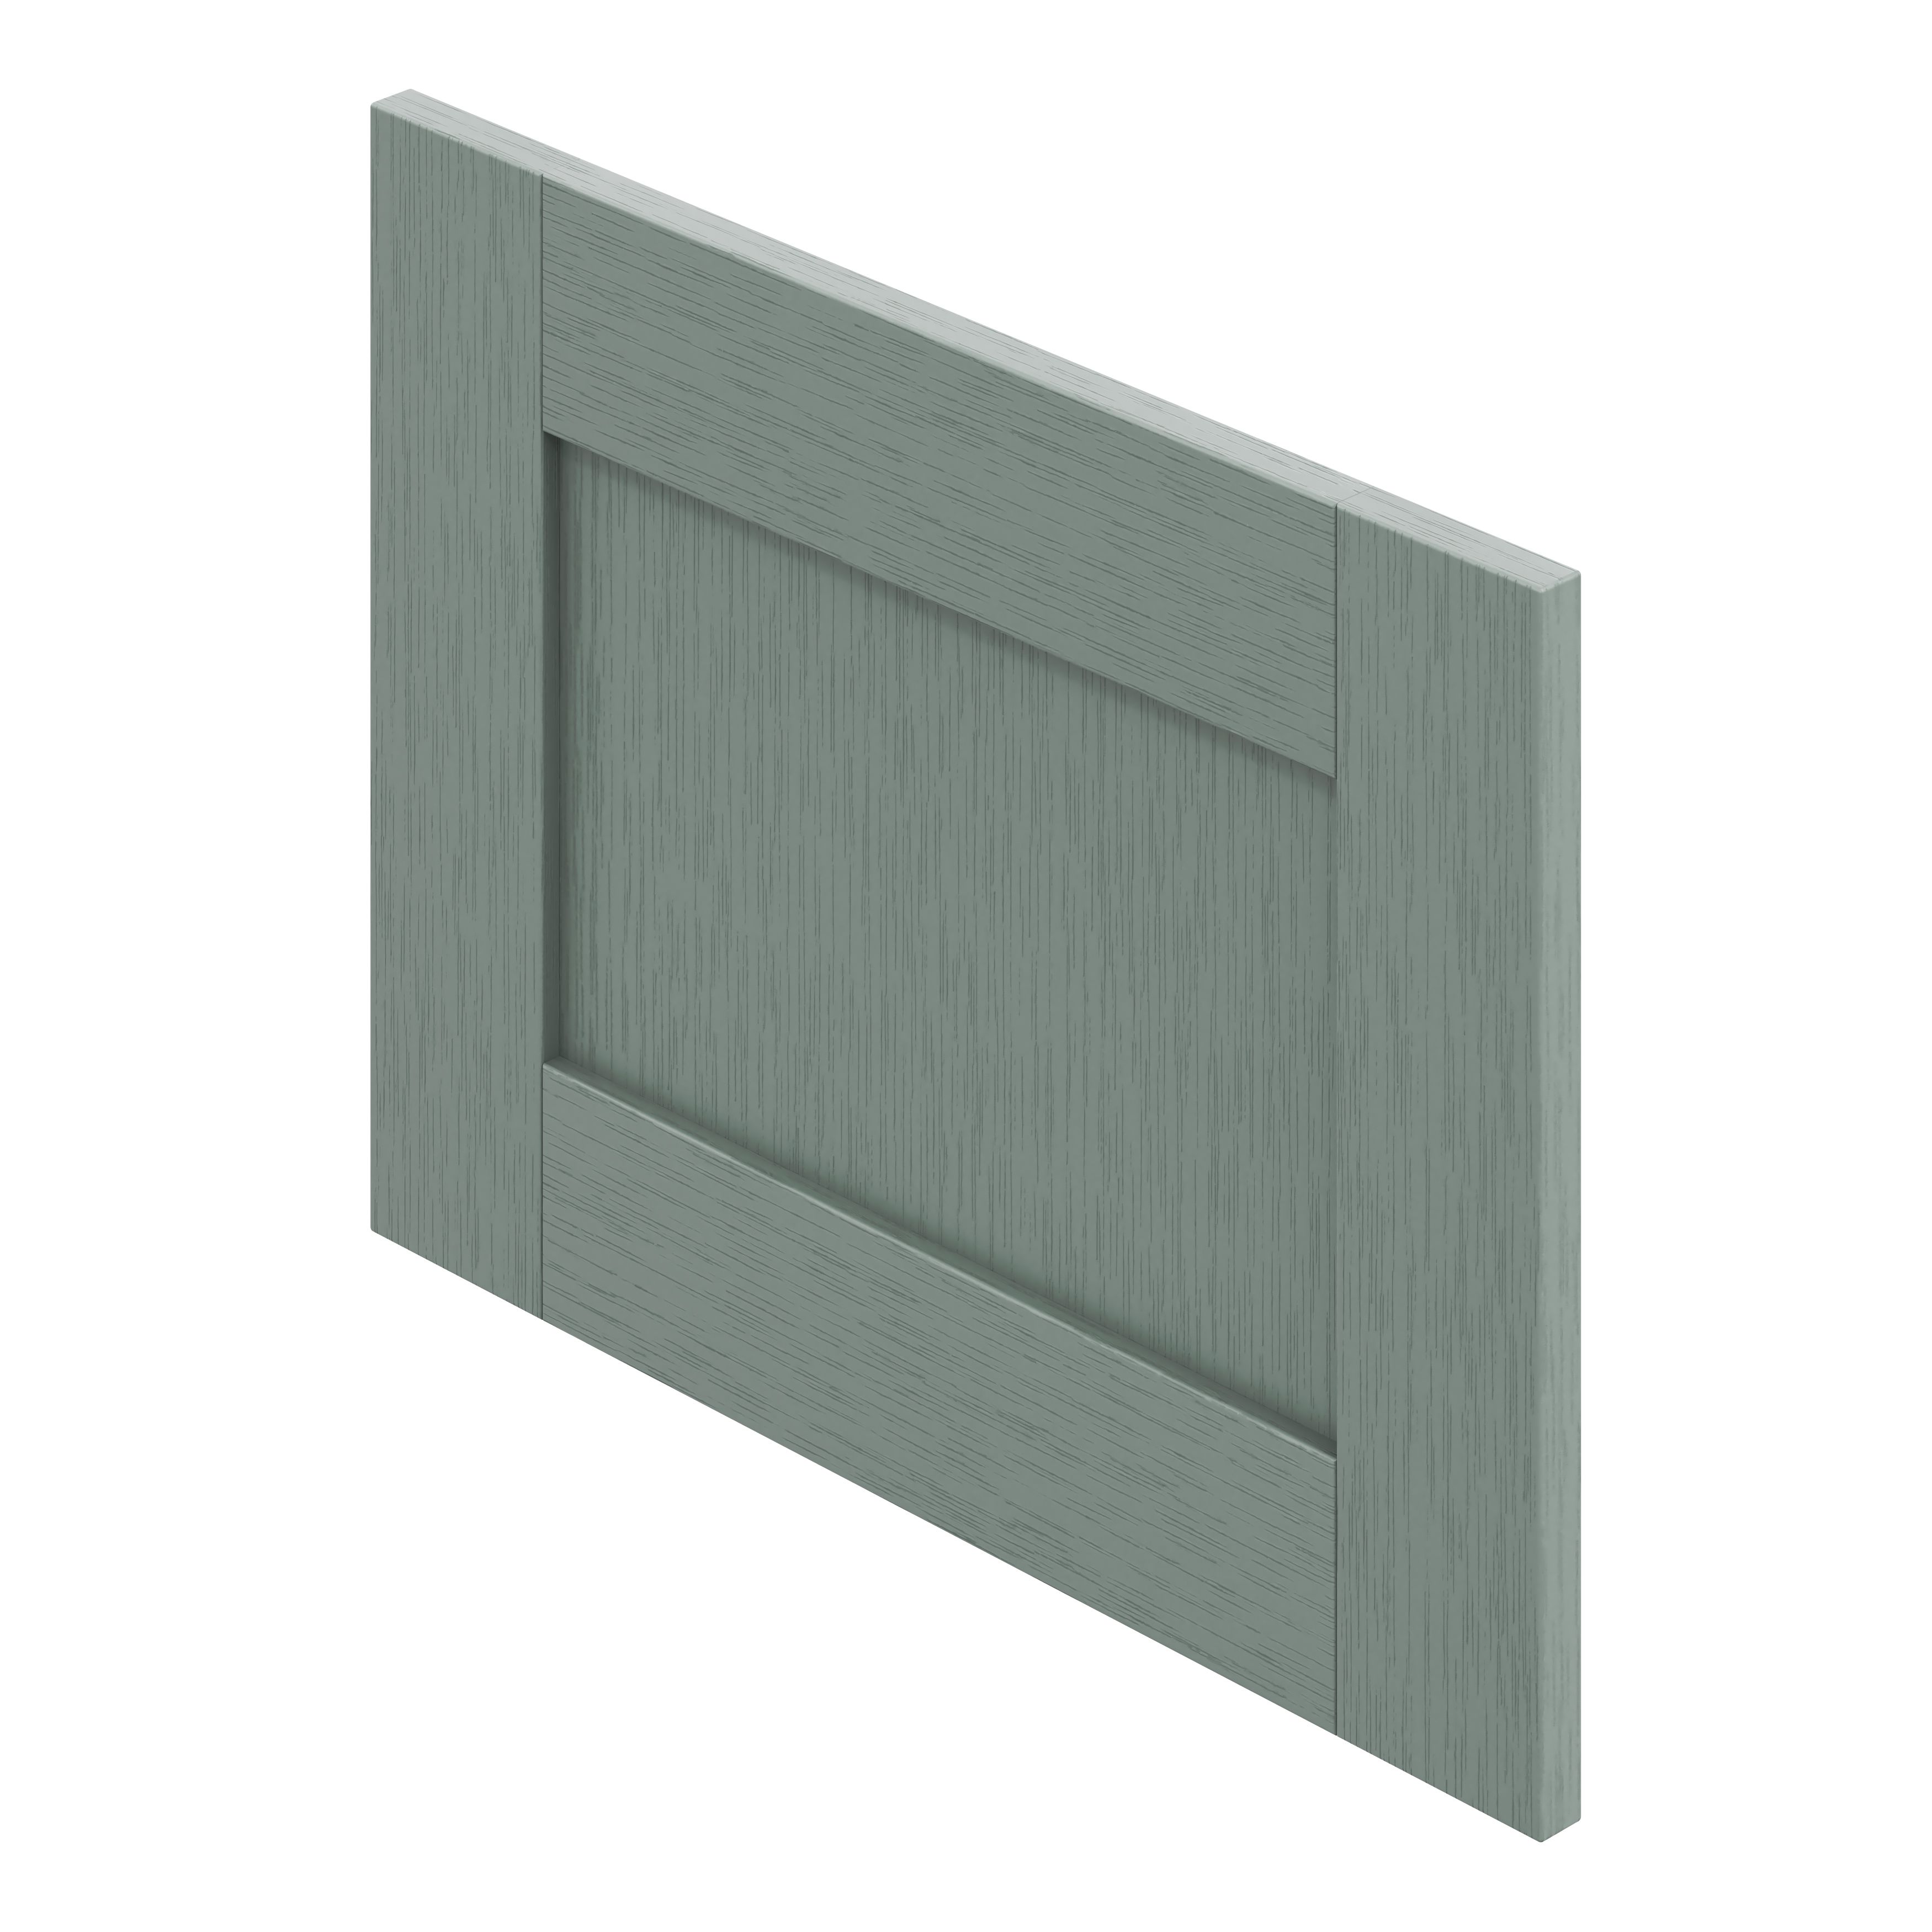 GoodHome Alpinia Matt Green Painted Wood Effect Shaker Drawer front, bridging door & bi fold door, (W)500mm (H)356mm (T)18mm